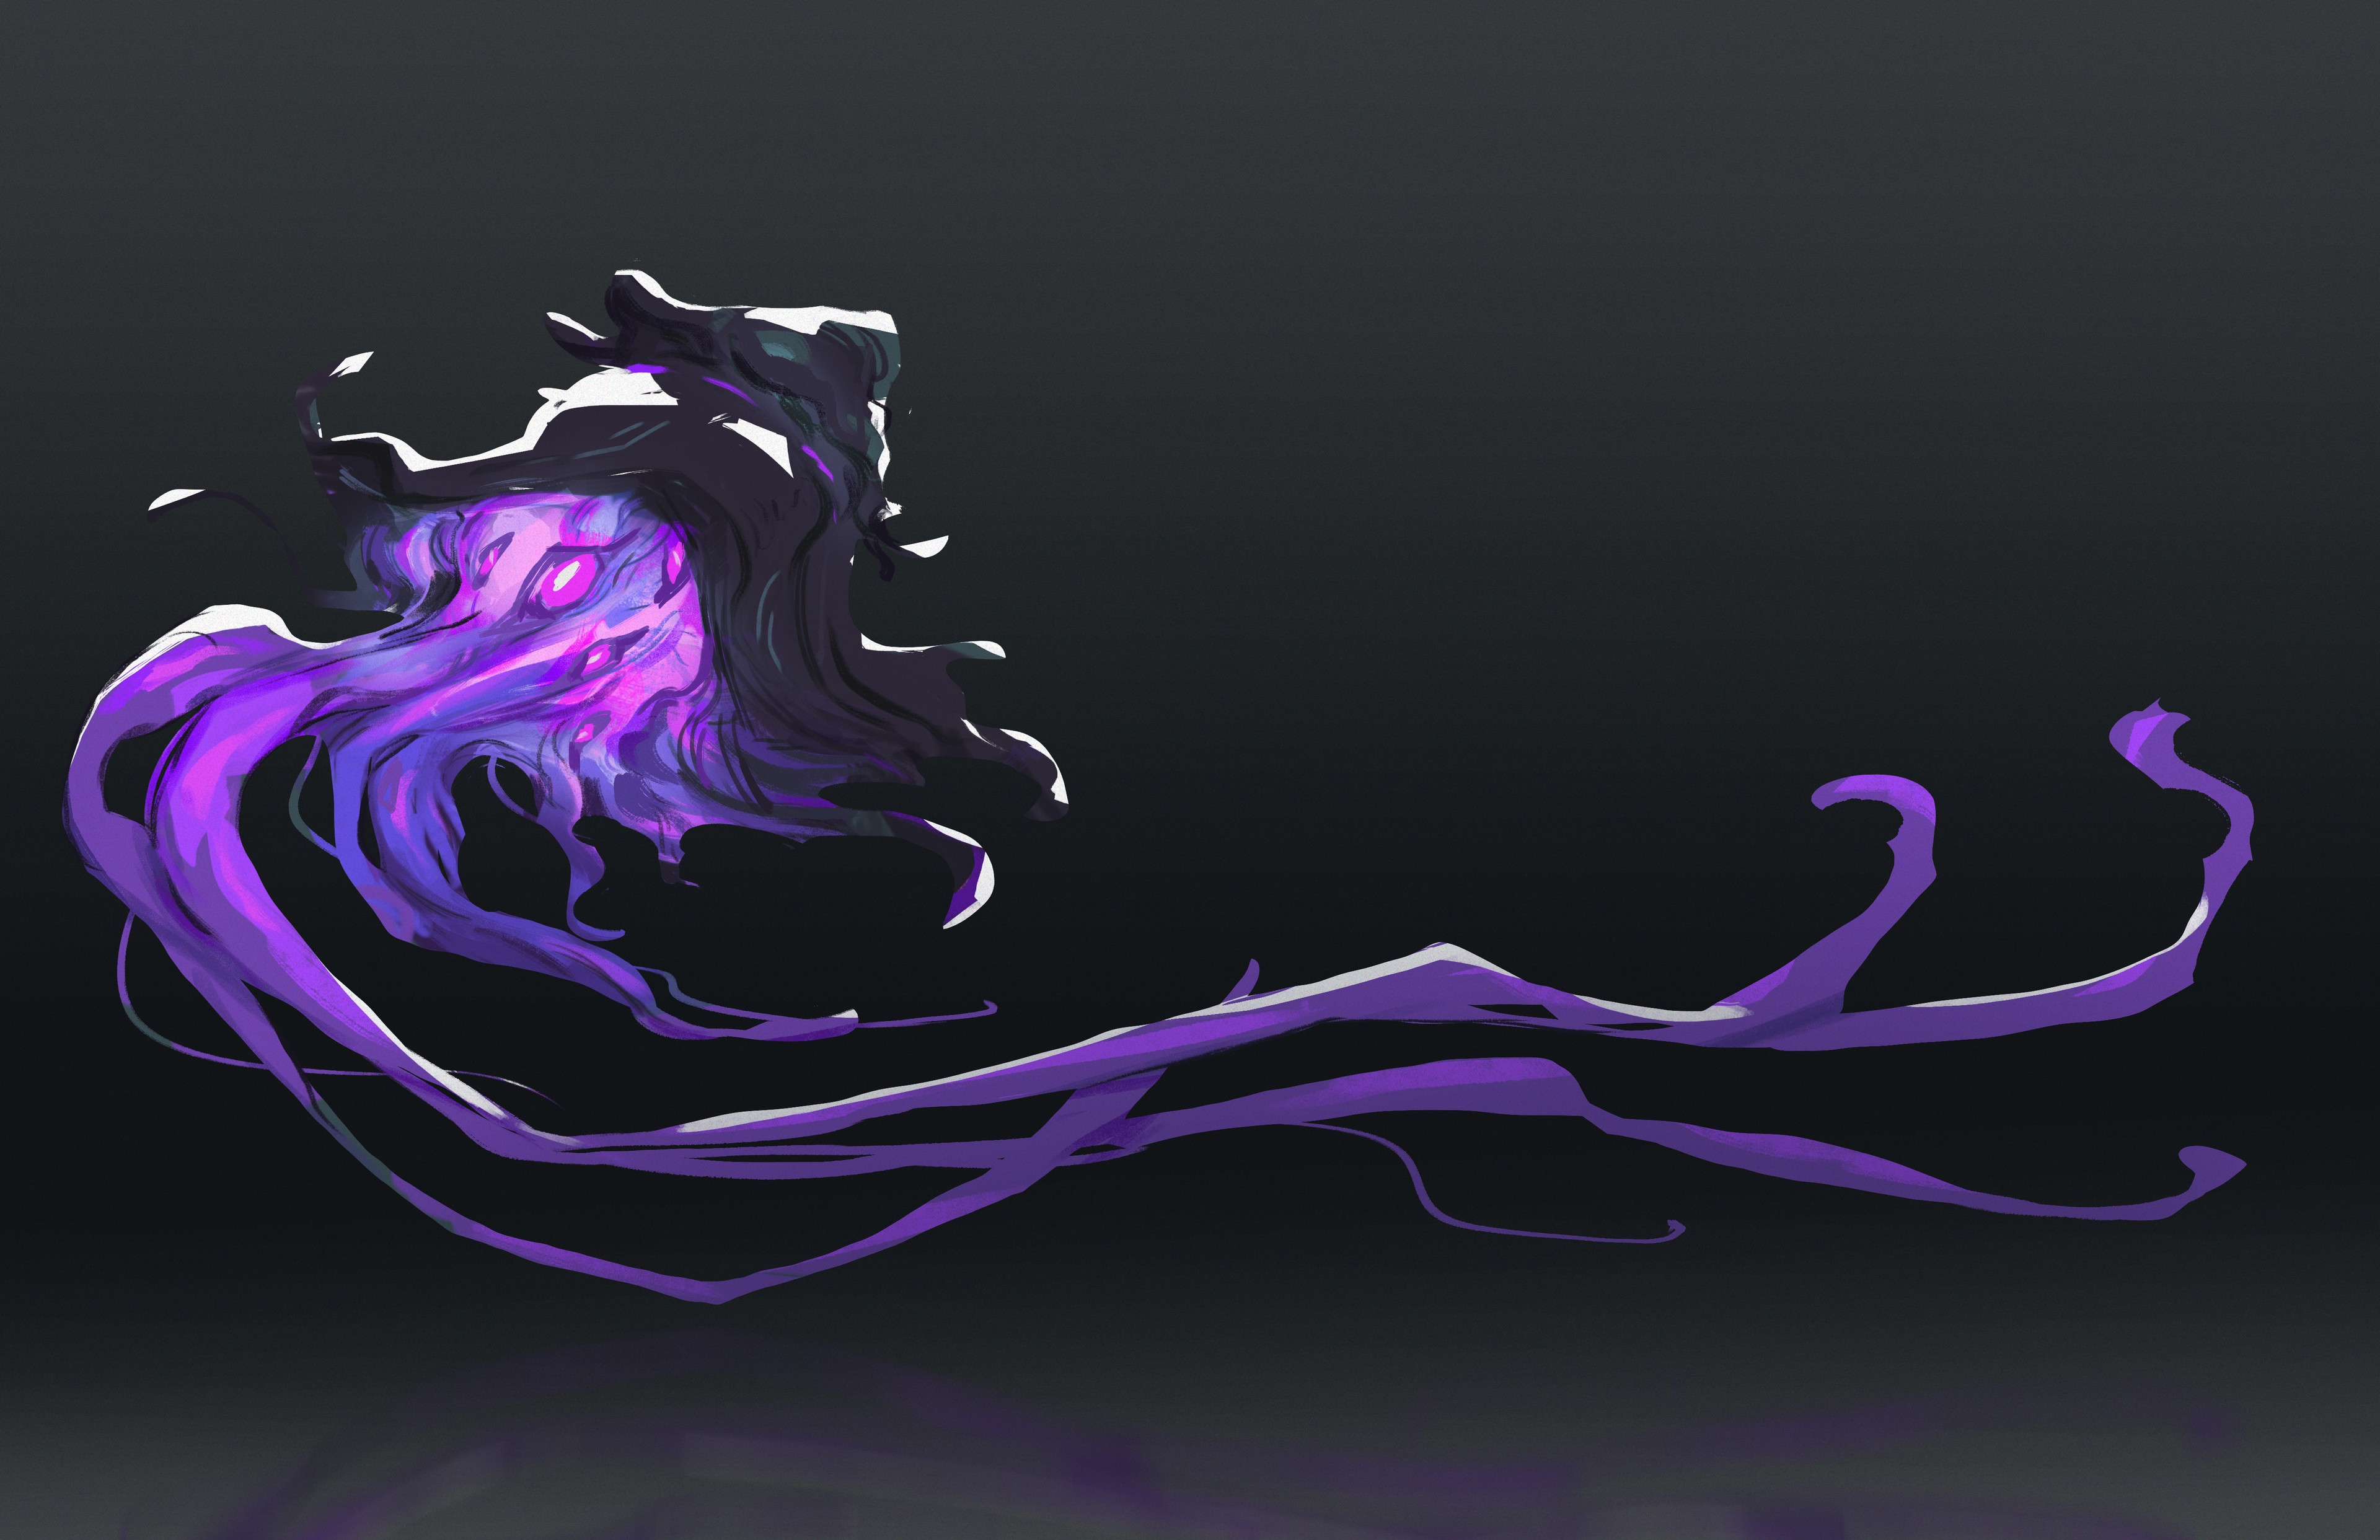 The Nebula Eater